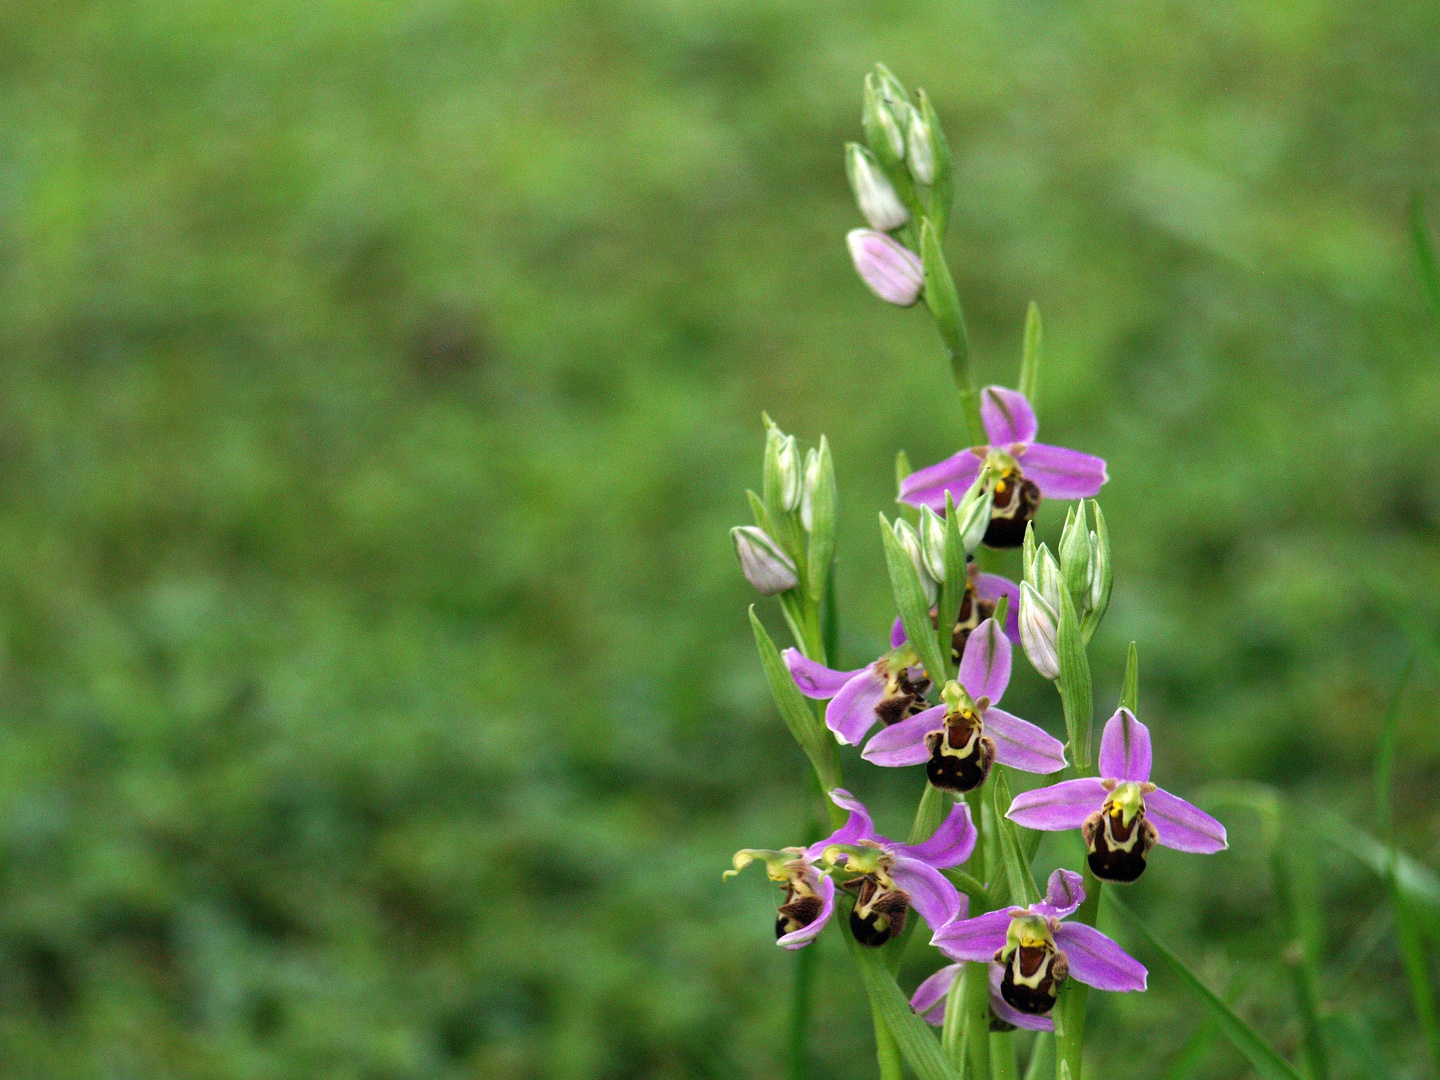 Orchidées sauvages dans le jardin 1 - Wilde Orchideen im Garten 1